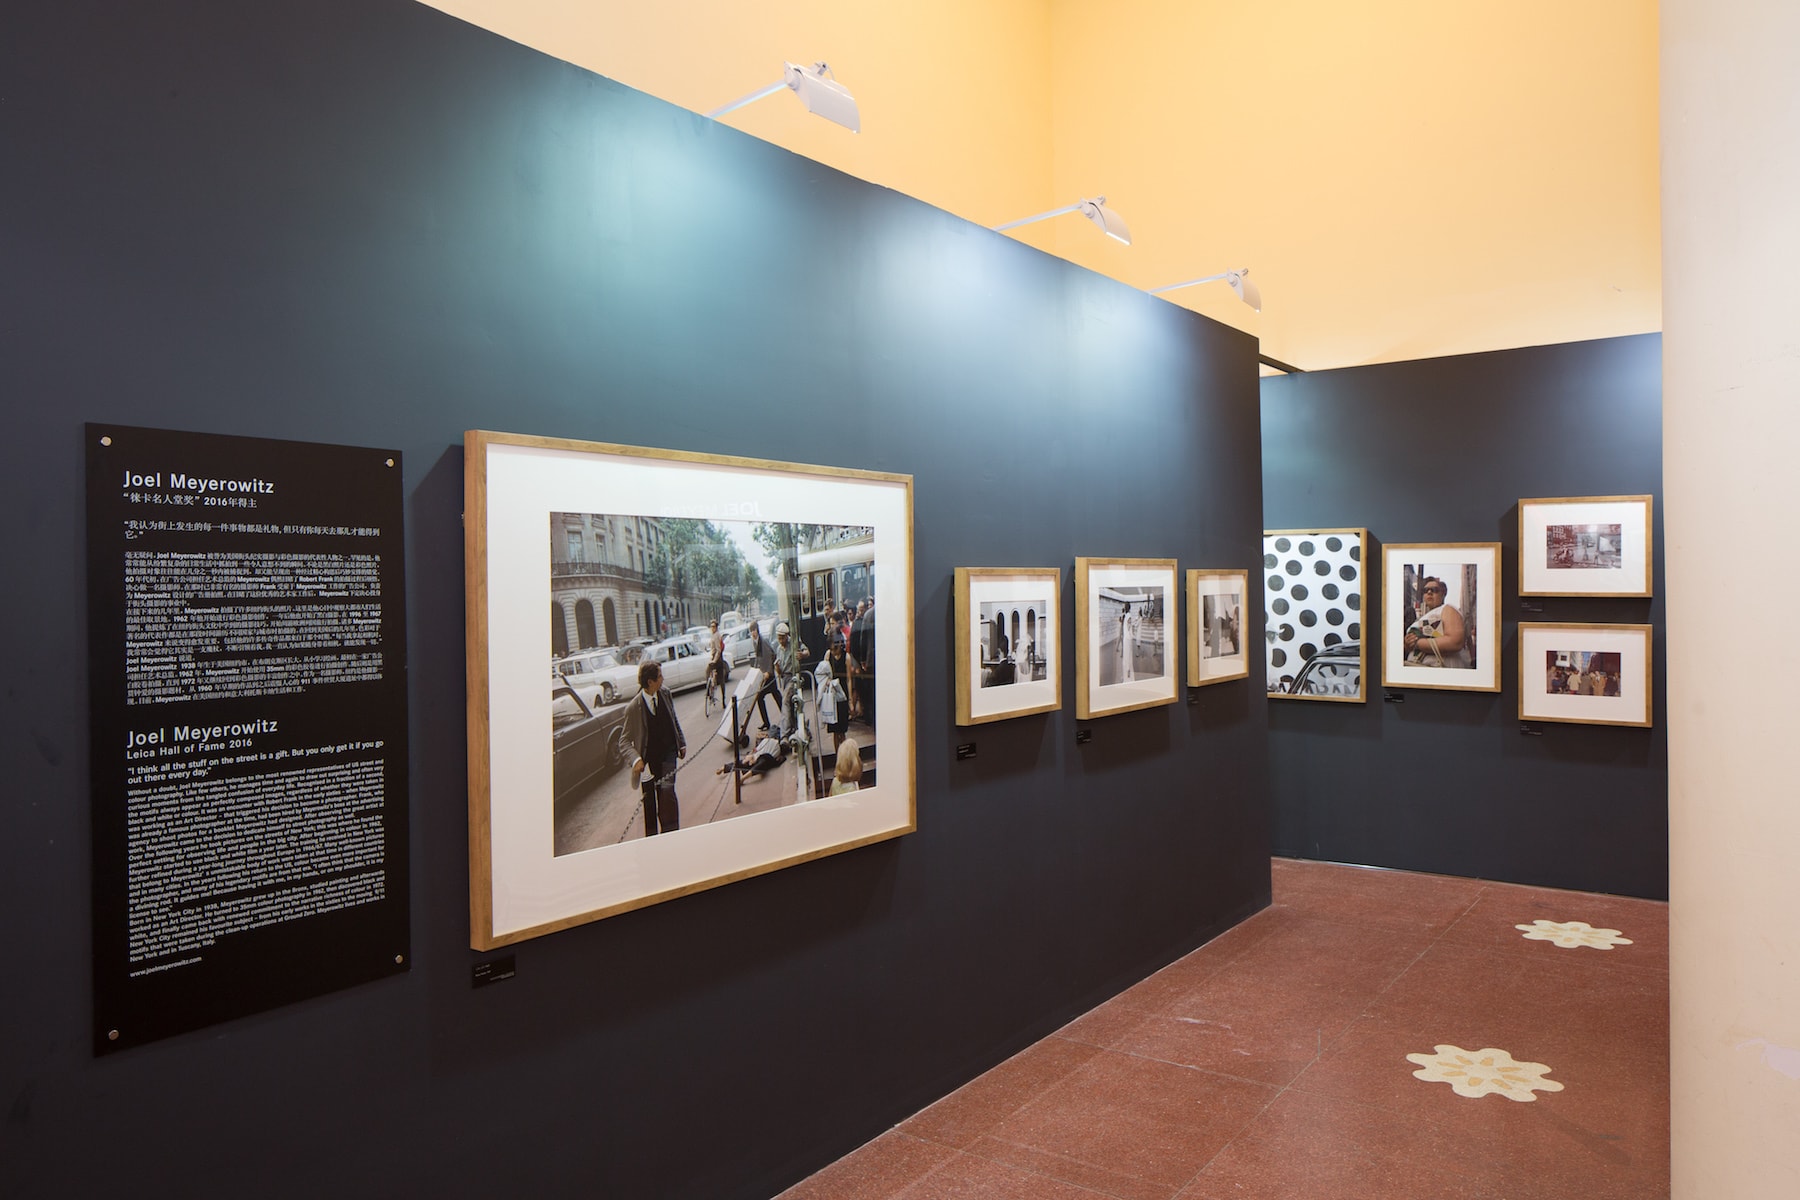 Leica 於影像上海艺术博览会舉辦街拍摄影主題展覽